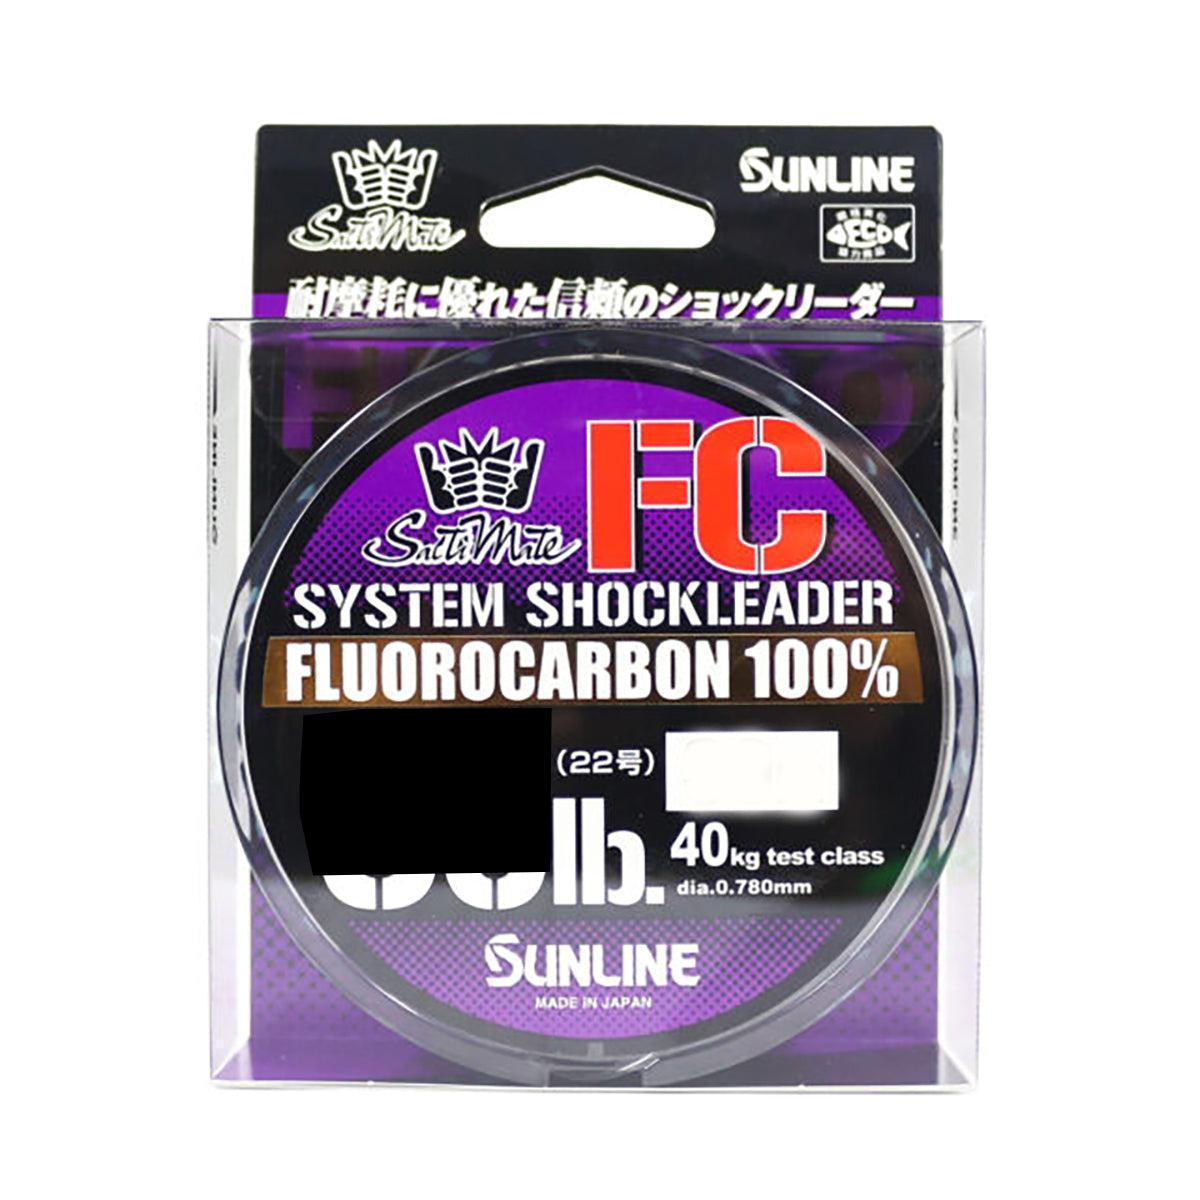 Sunline FC System Shockleader Fluorocarbon